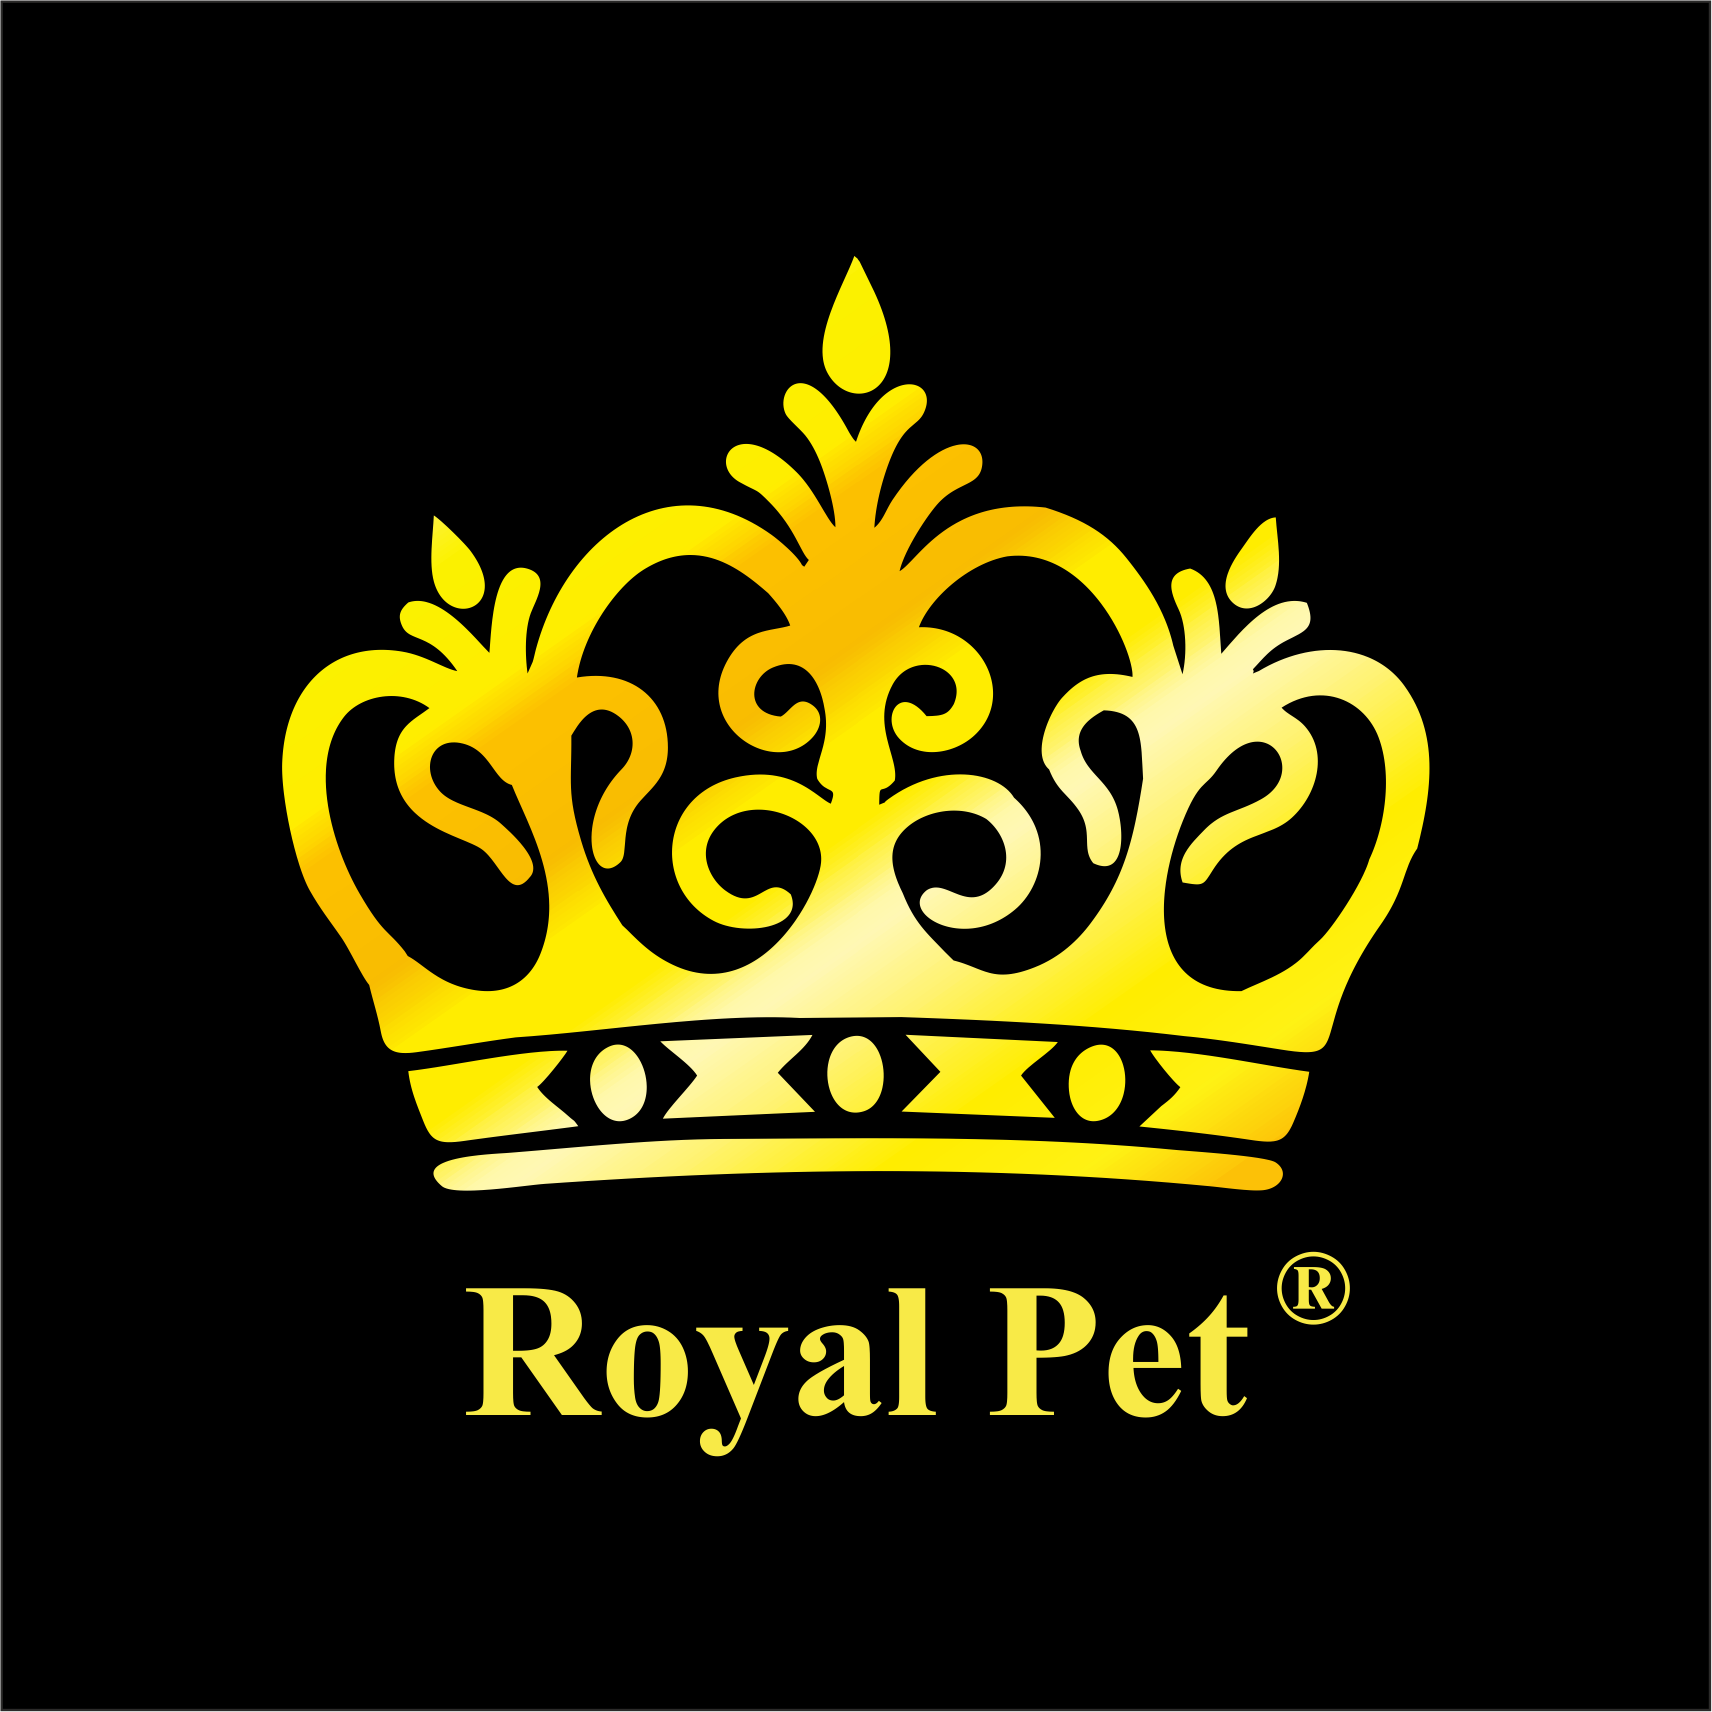 Royal Pet